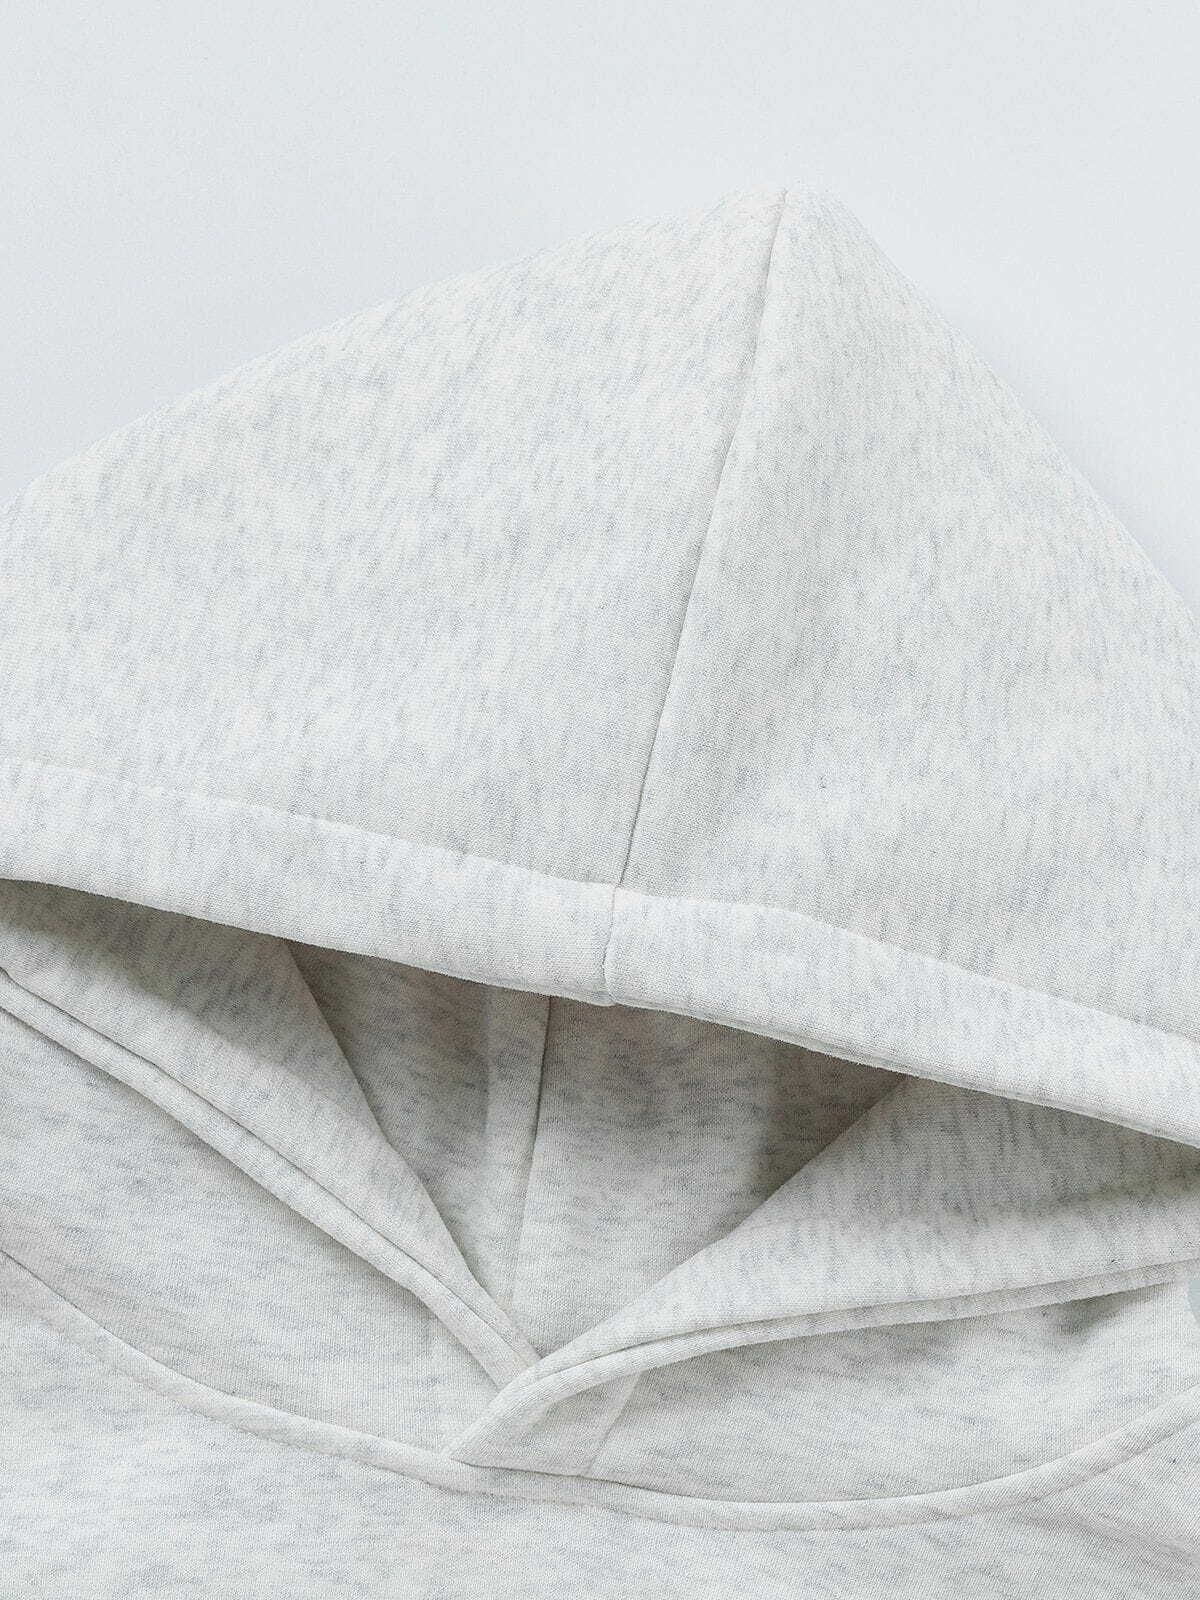 sliced print pullover hoodie edgy black & white streetwear 3278